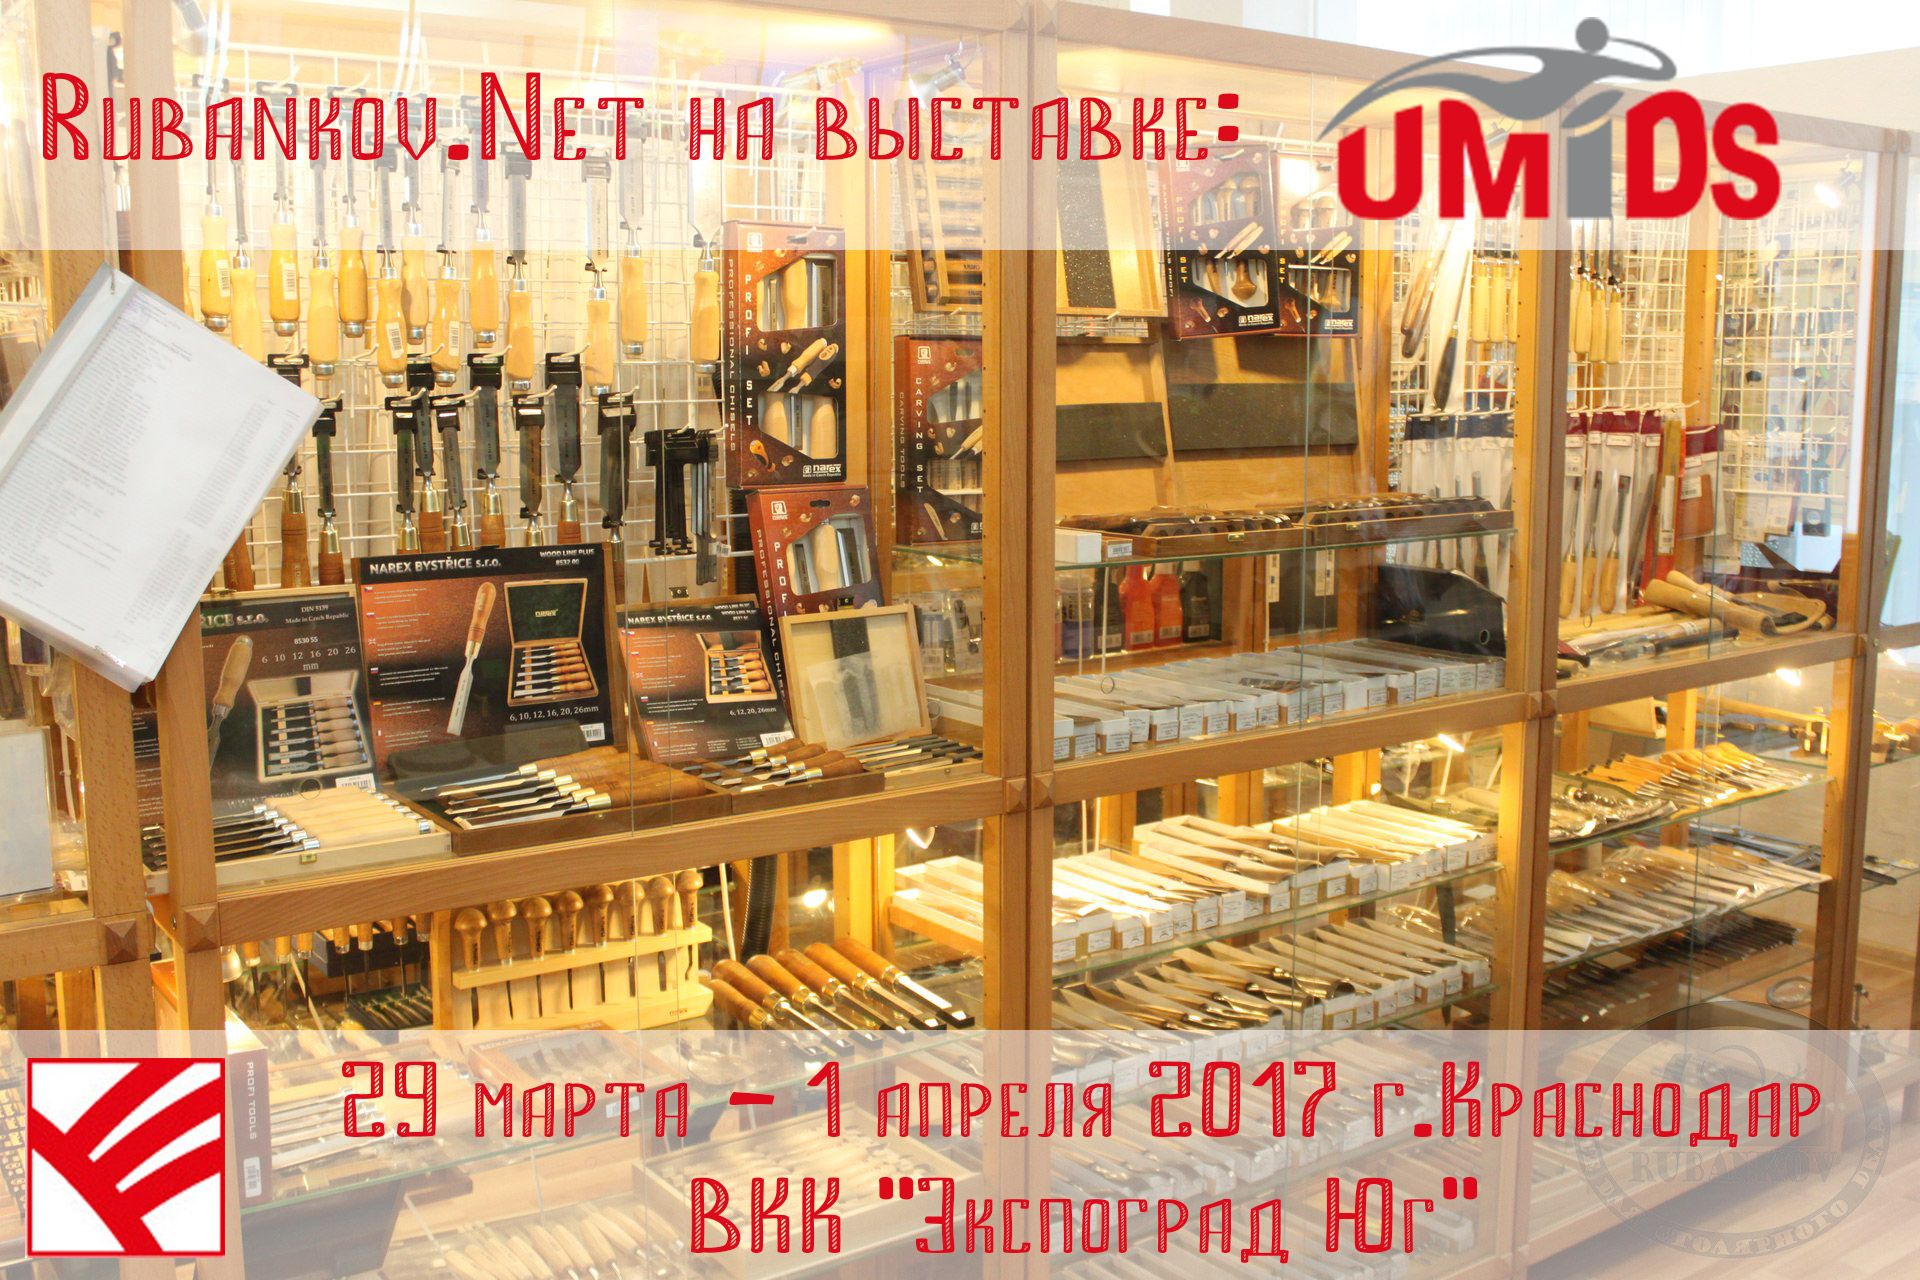 Rubankov на выставке UMIDS 2017